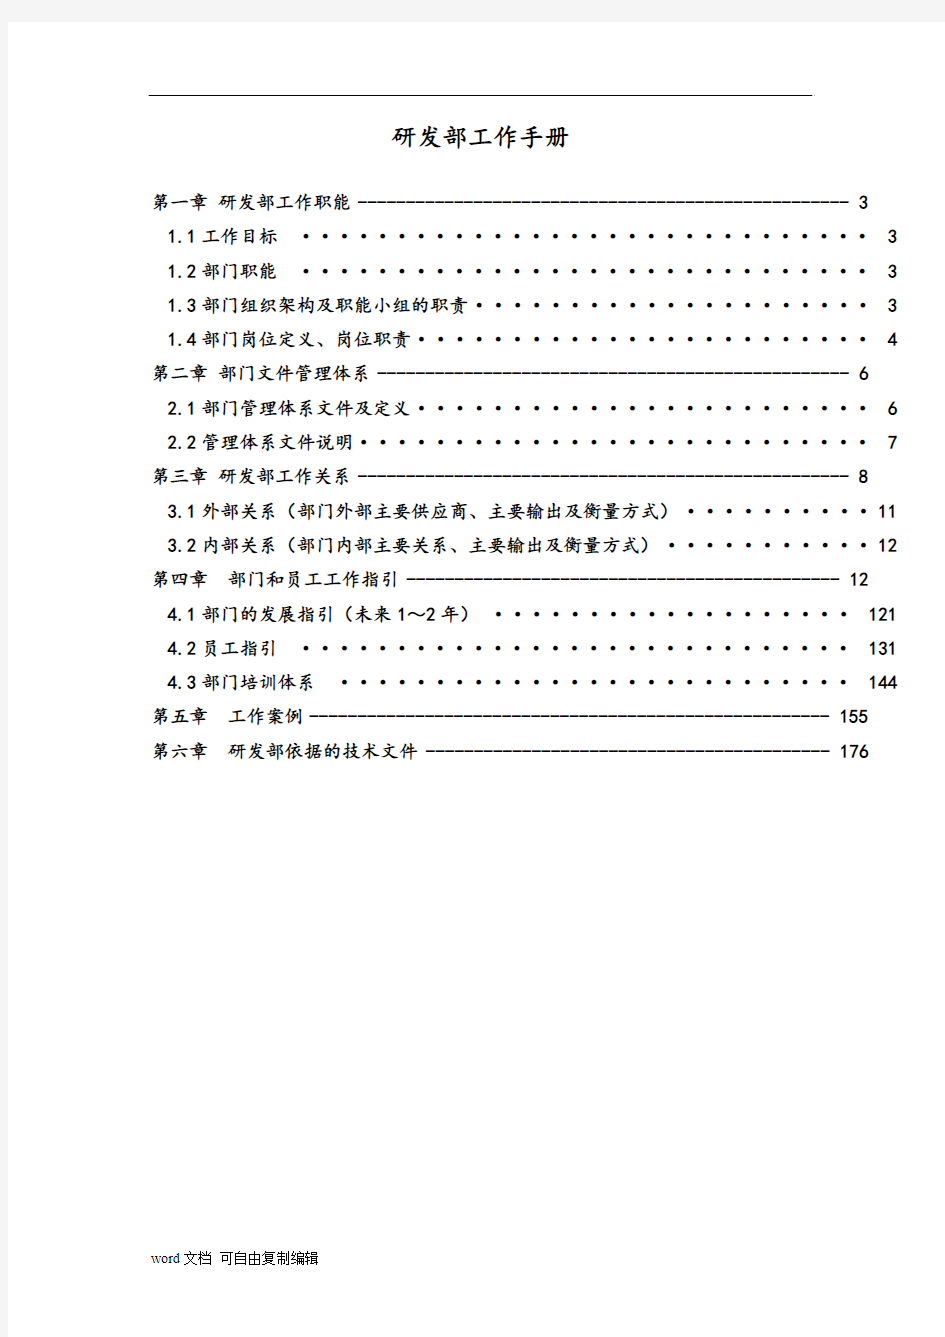 龙湖地产研发部手册(2013年版)